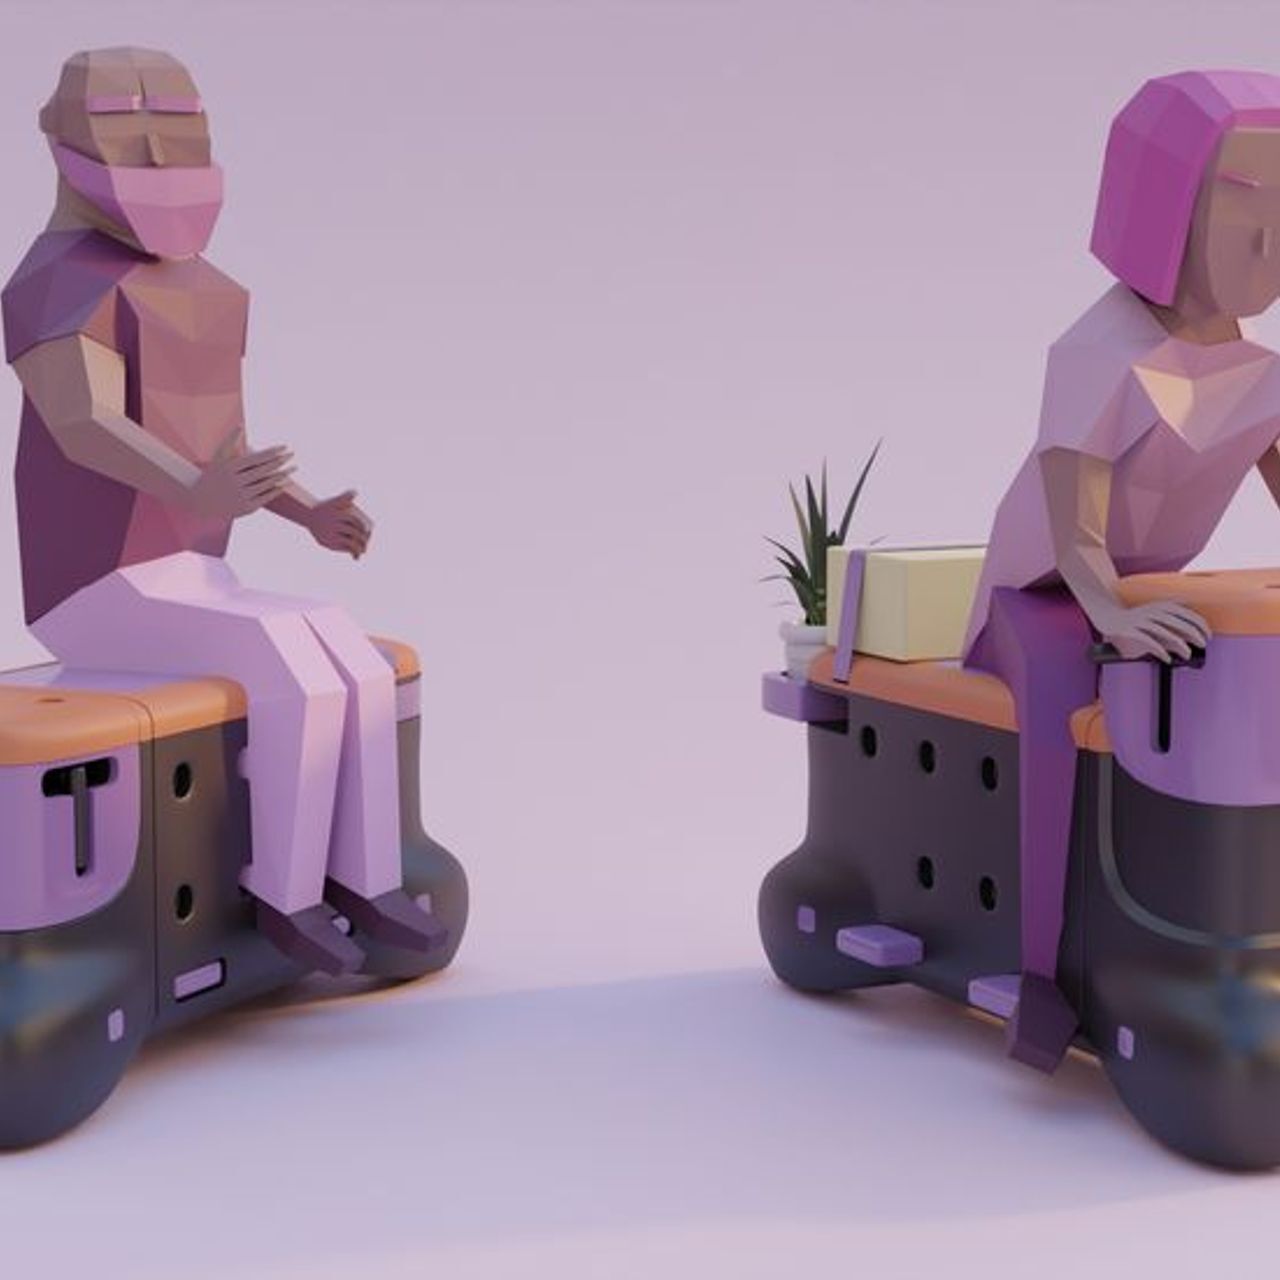 'TOD' er scooter-bænken skabt af designstuderende Corentin Janel og Guillaume Innocenti